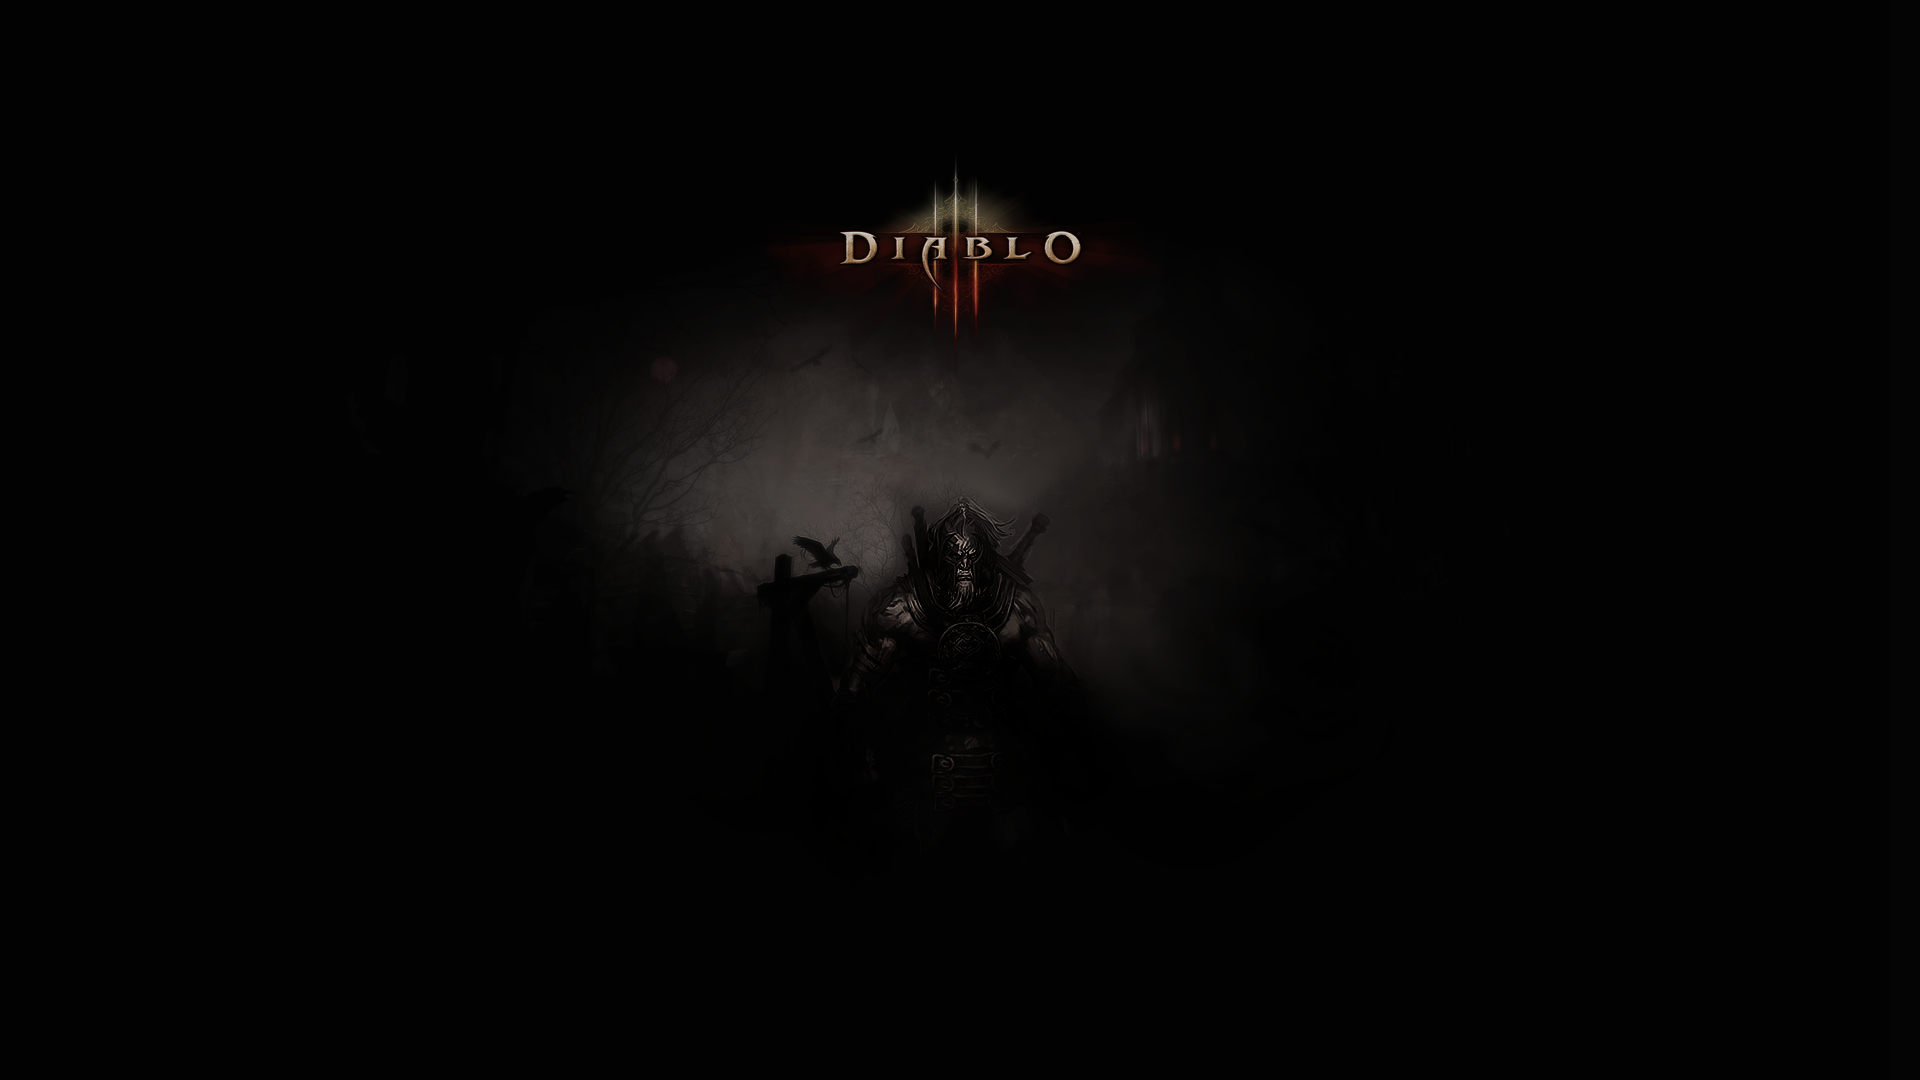 Diablo 2 Picture by Jordan Habrin on FeelGrafix